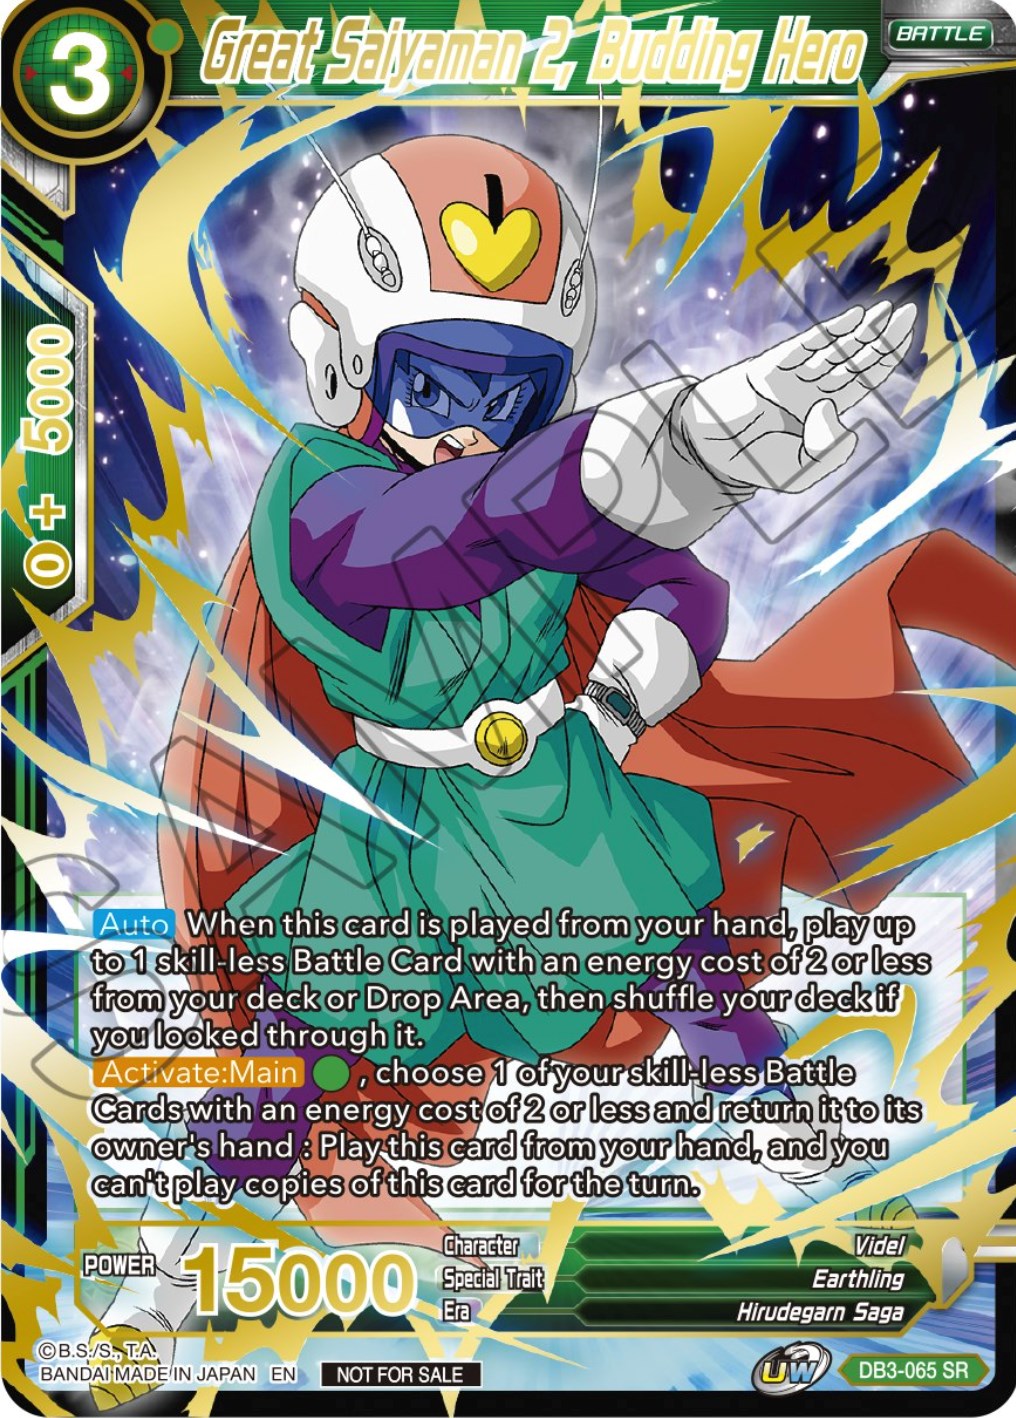 Great Saiyaman 2, Budding Hero (DB3-065) [Tournament Promotion Cards] | Pegasus Games WI